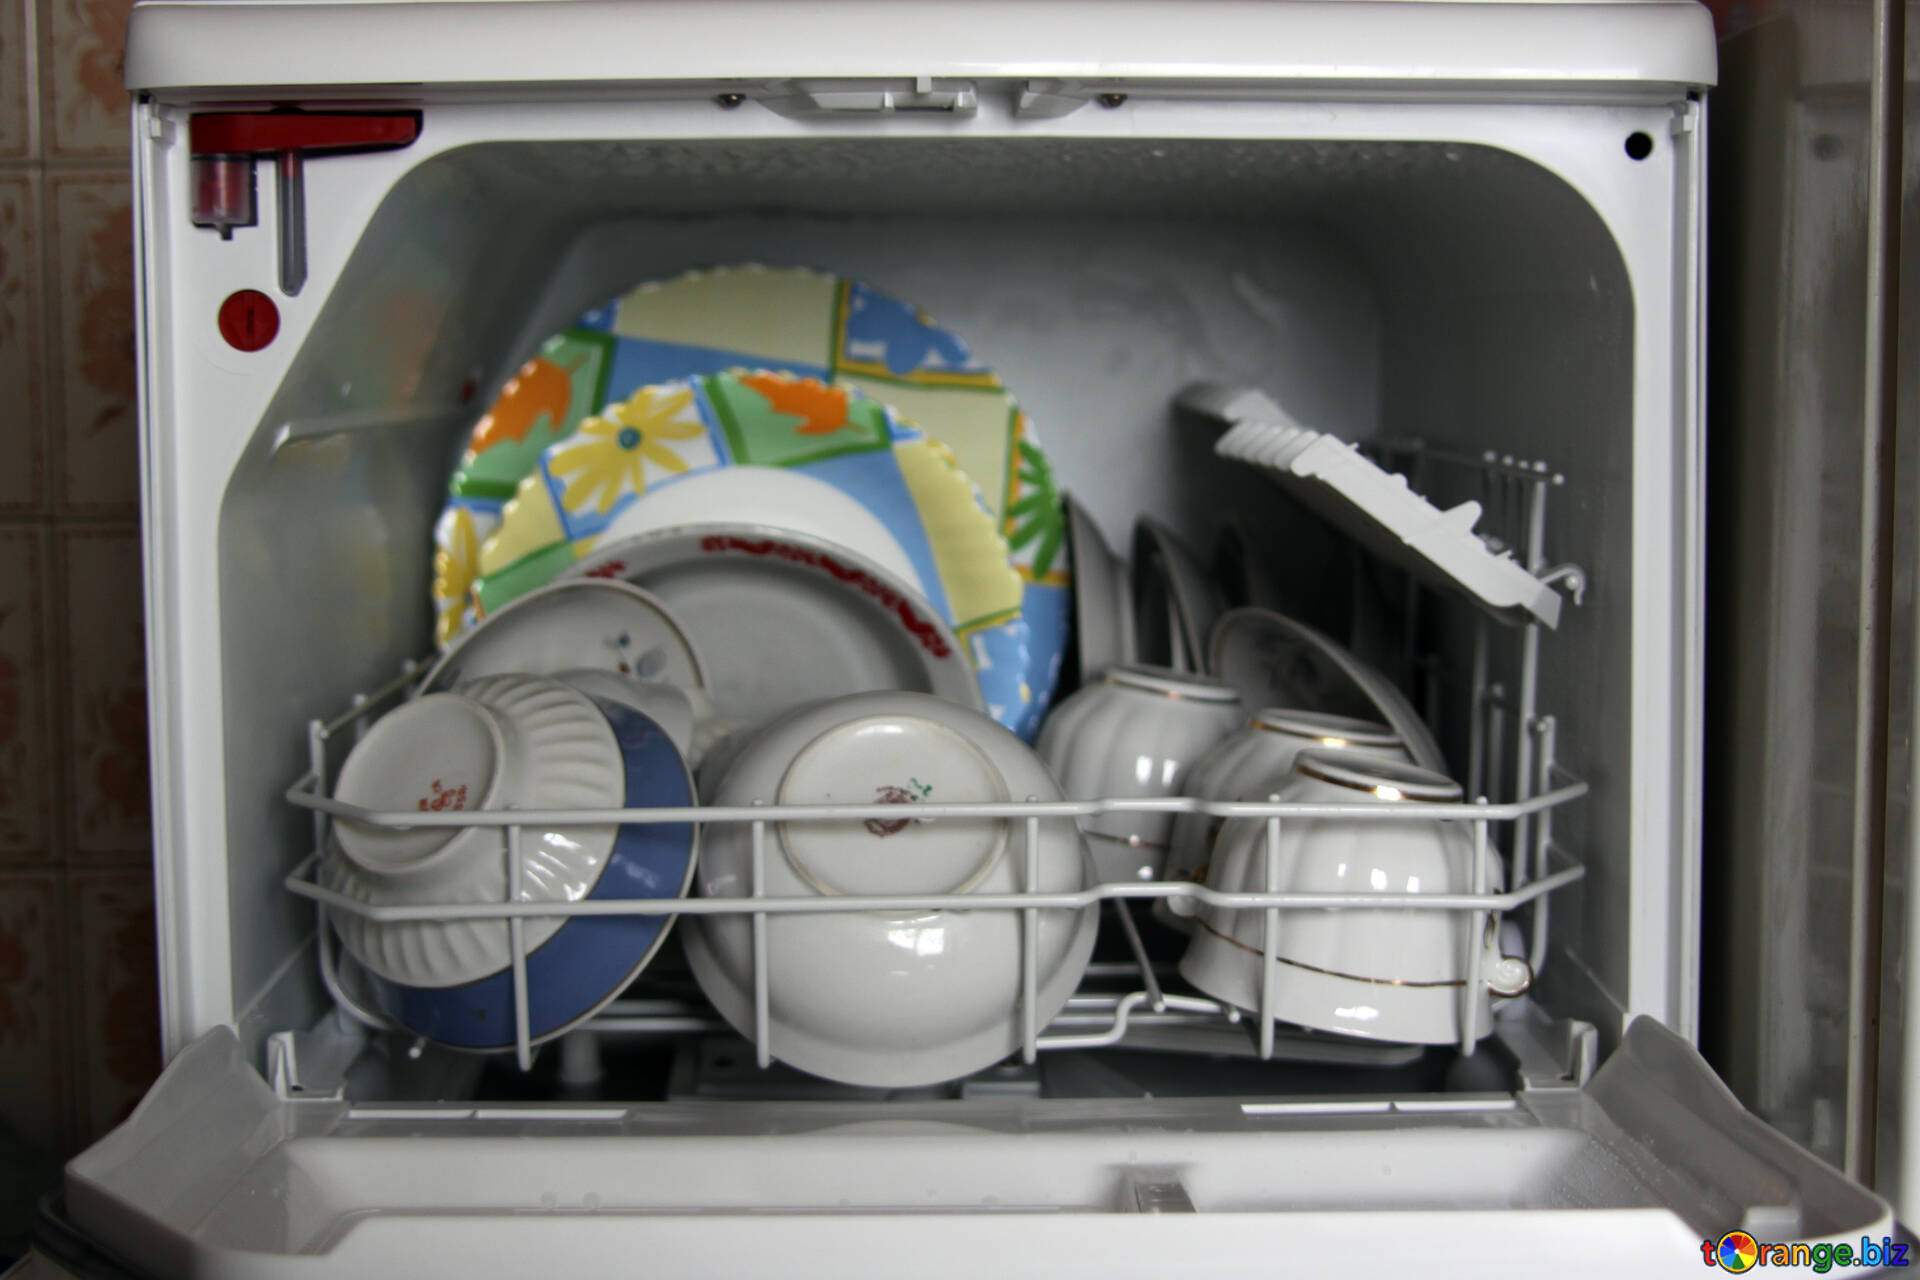 Кастрюля можно мыть в посудомоечной машине. Машина п/моечная ПММ-к1. МПТ-1700 посудомоечная машина. Посуда в посудомоечной машине. Загрузка посуды в посудомоечную машину кастрюли.